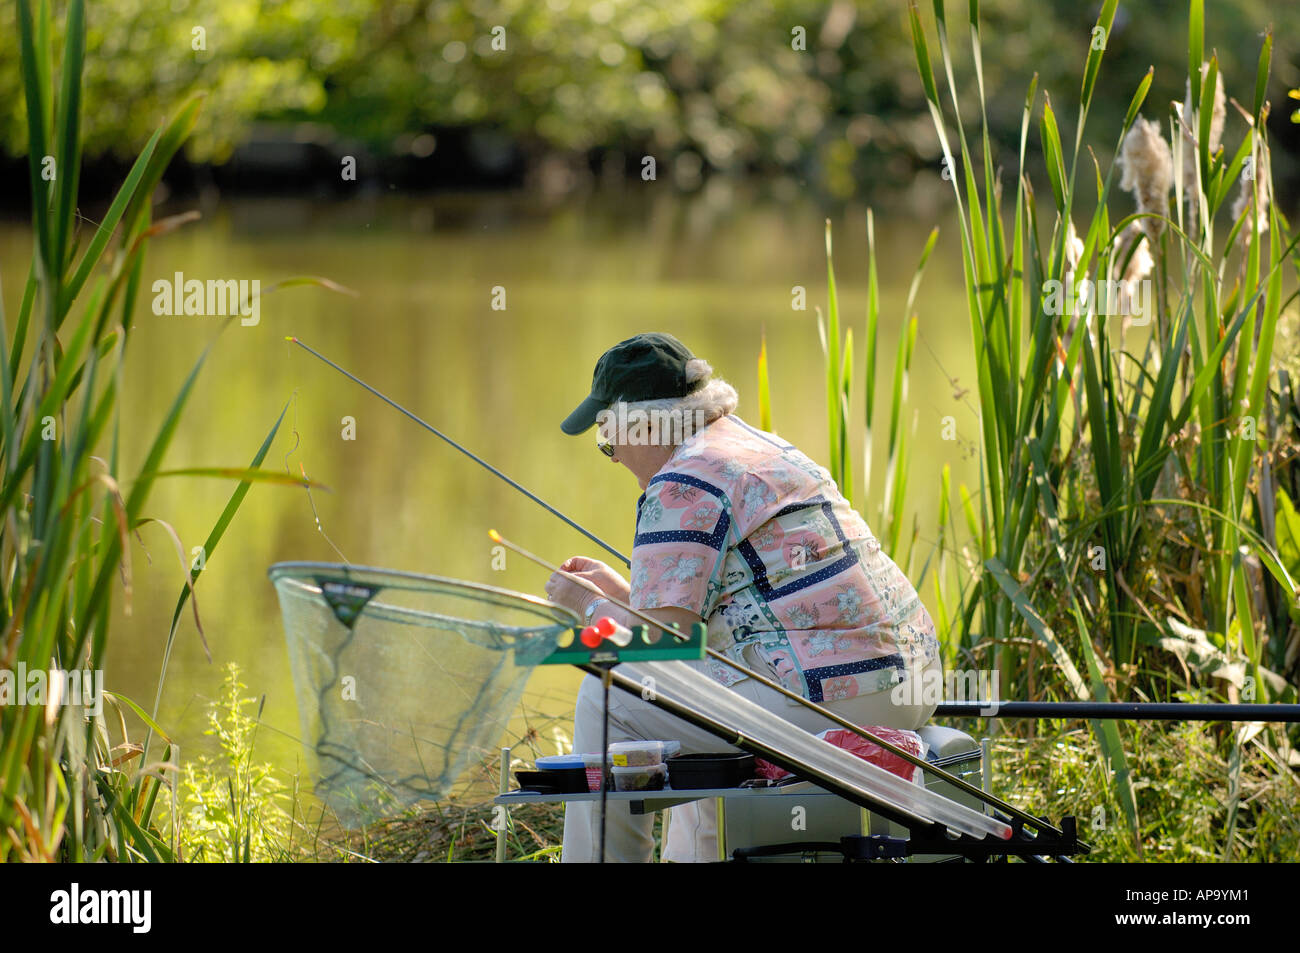 https://c8.alamy.com/comp/AP9YM1/woman-coarse-fishing-with-pole-moel-y-garth-pools-guilsfield-near-AP9YM1.jpg